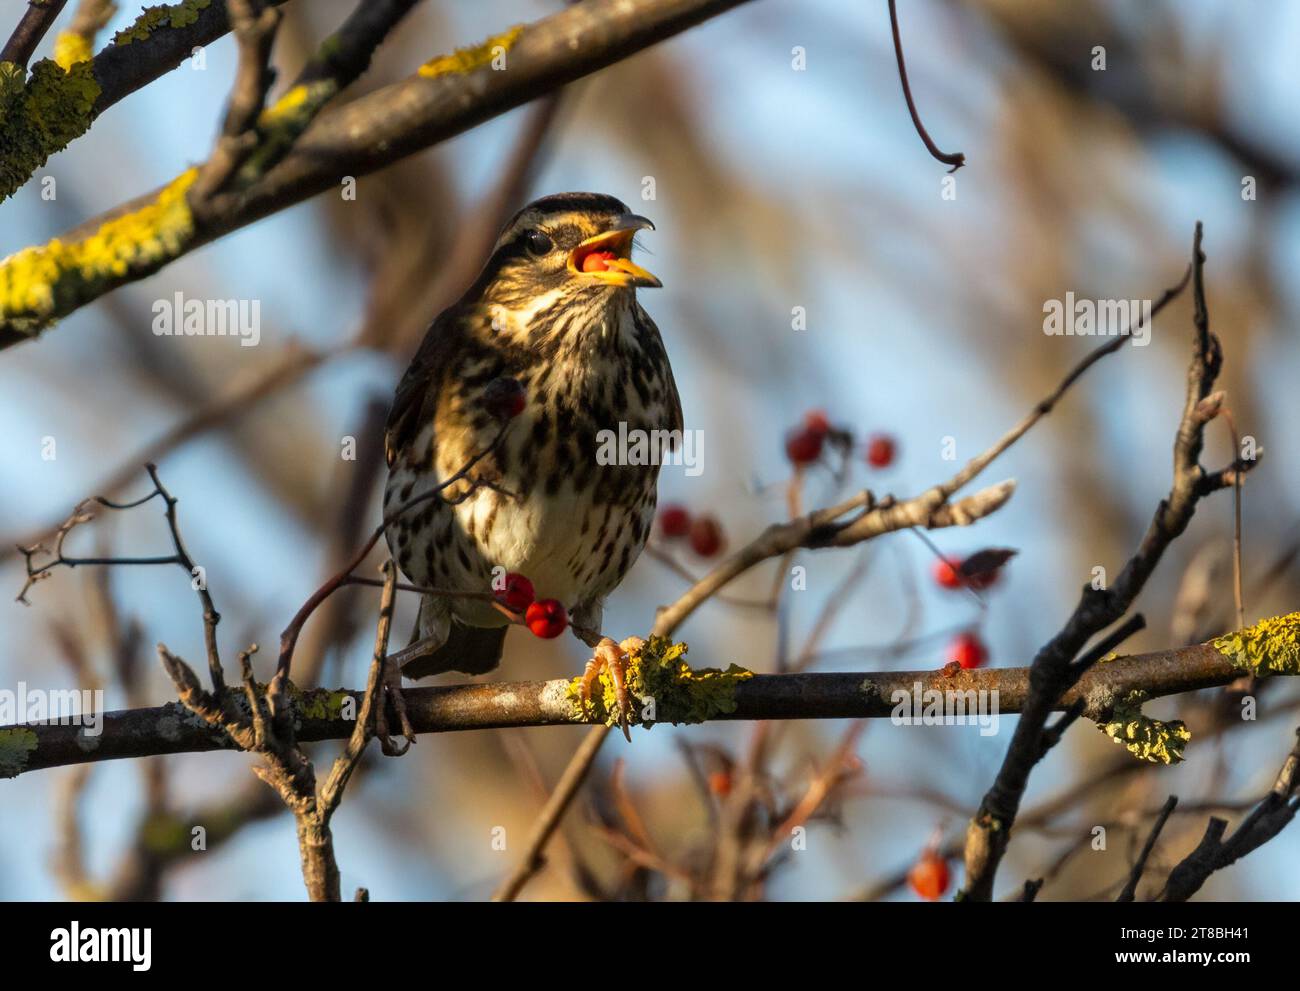 Pájaro migratorio Redwing comiendo una baya roja de rowan Foto de stock